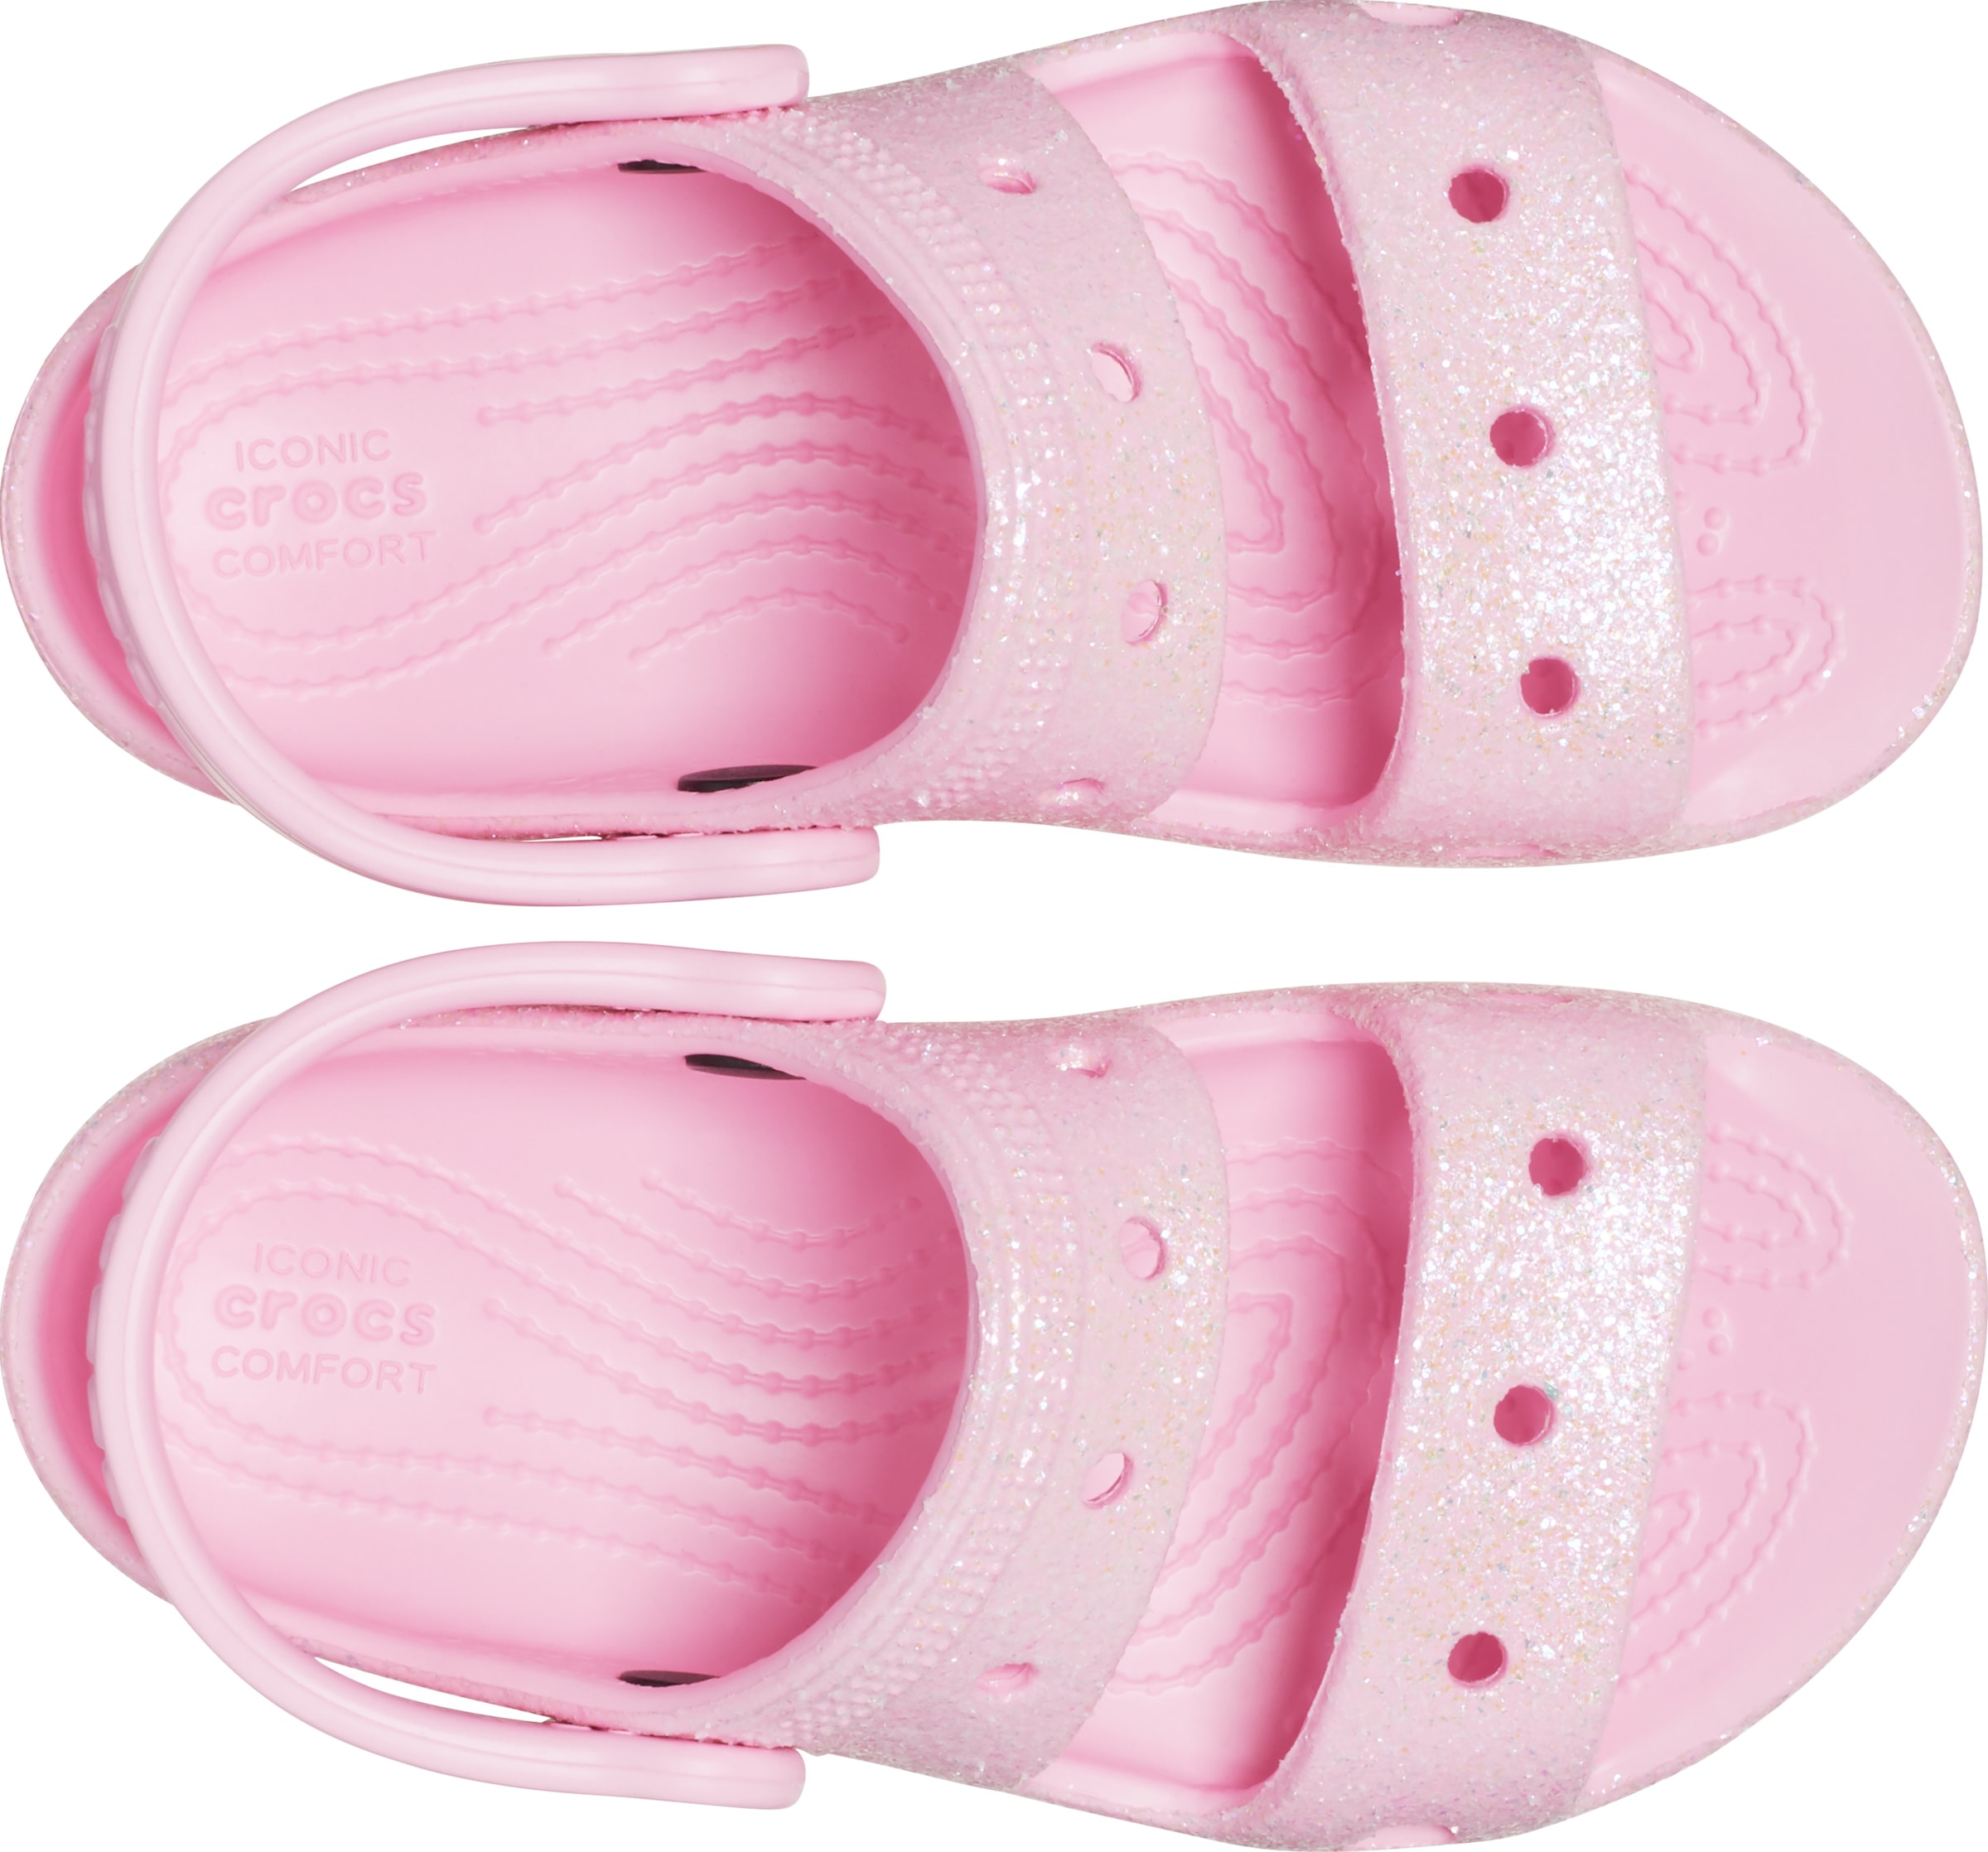 Crocs Badesandale »Classic Crocs Glitter Sandal T«, mit allover Glitzer für  Kinder | aktuell bei I'm walking